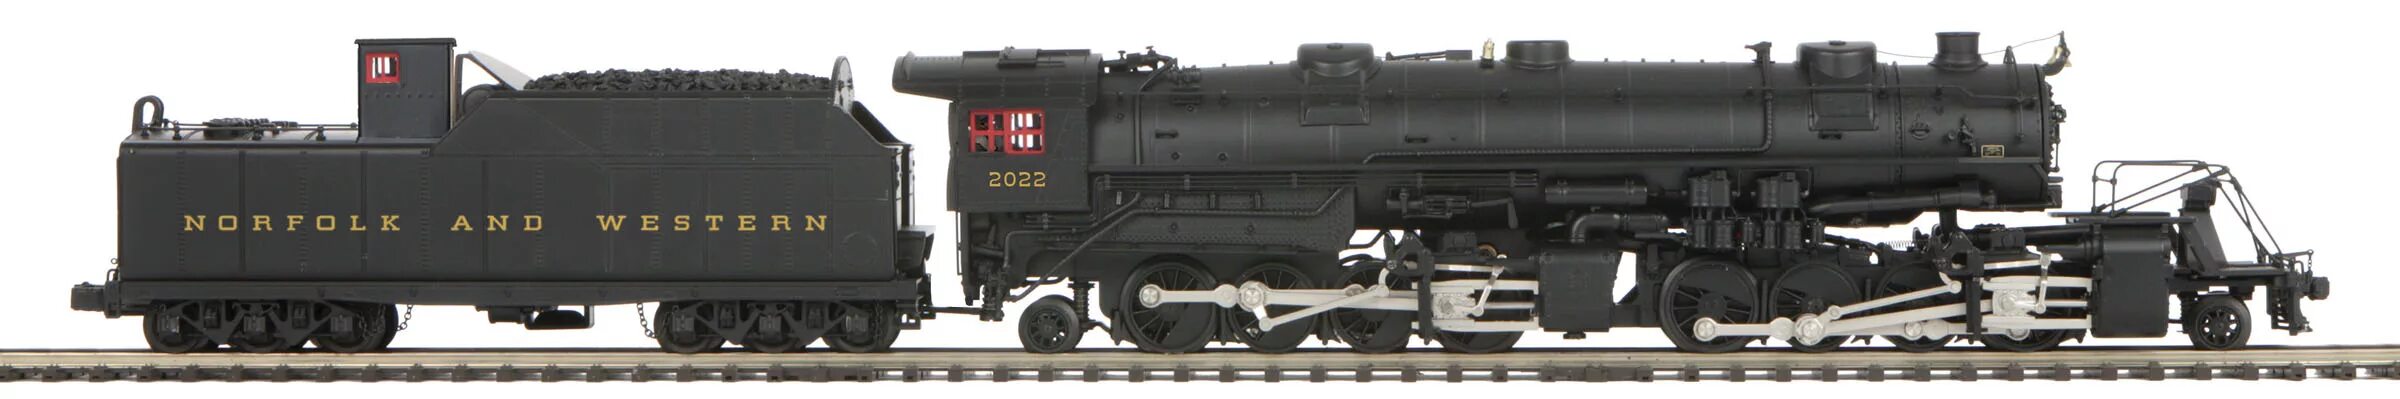 K 2 article. Baldwin 284s3 паровоз. Паровоз Lima h0 с тендером. Японский паровоз c1250 типа 1 3 0. Locomotive Planet 9 1830 модель.